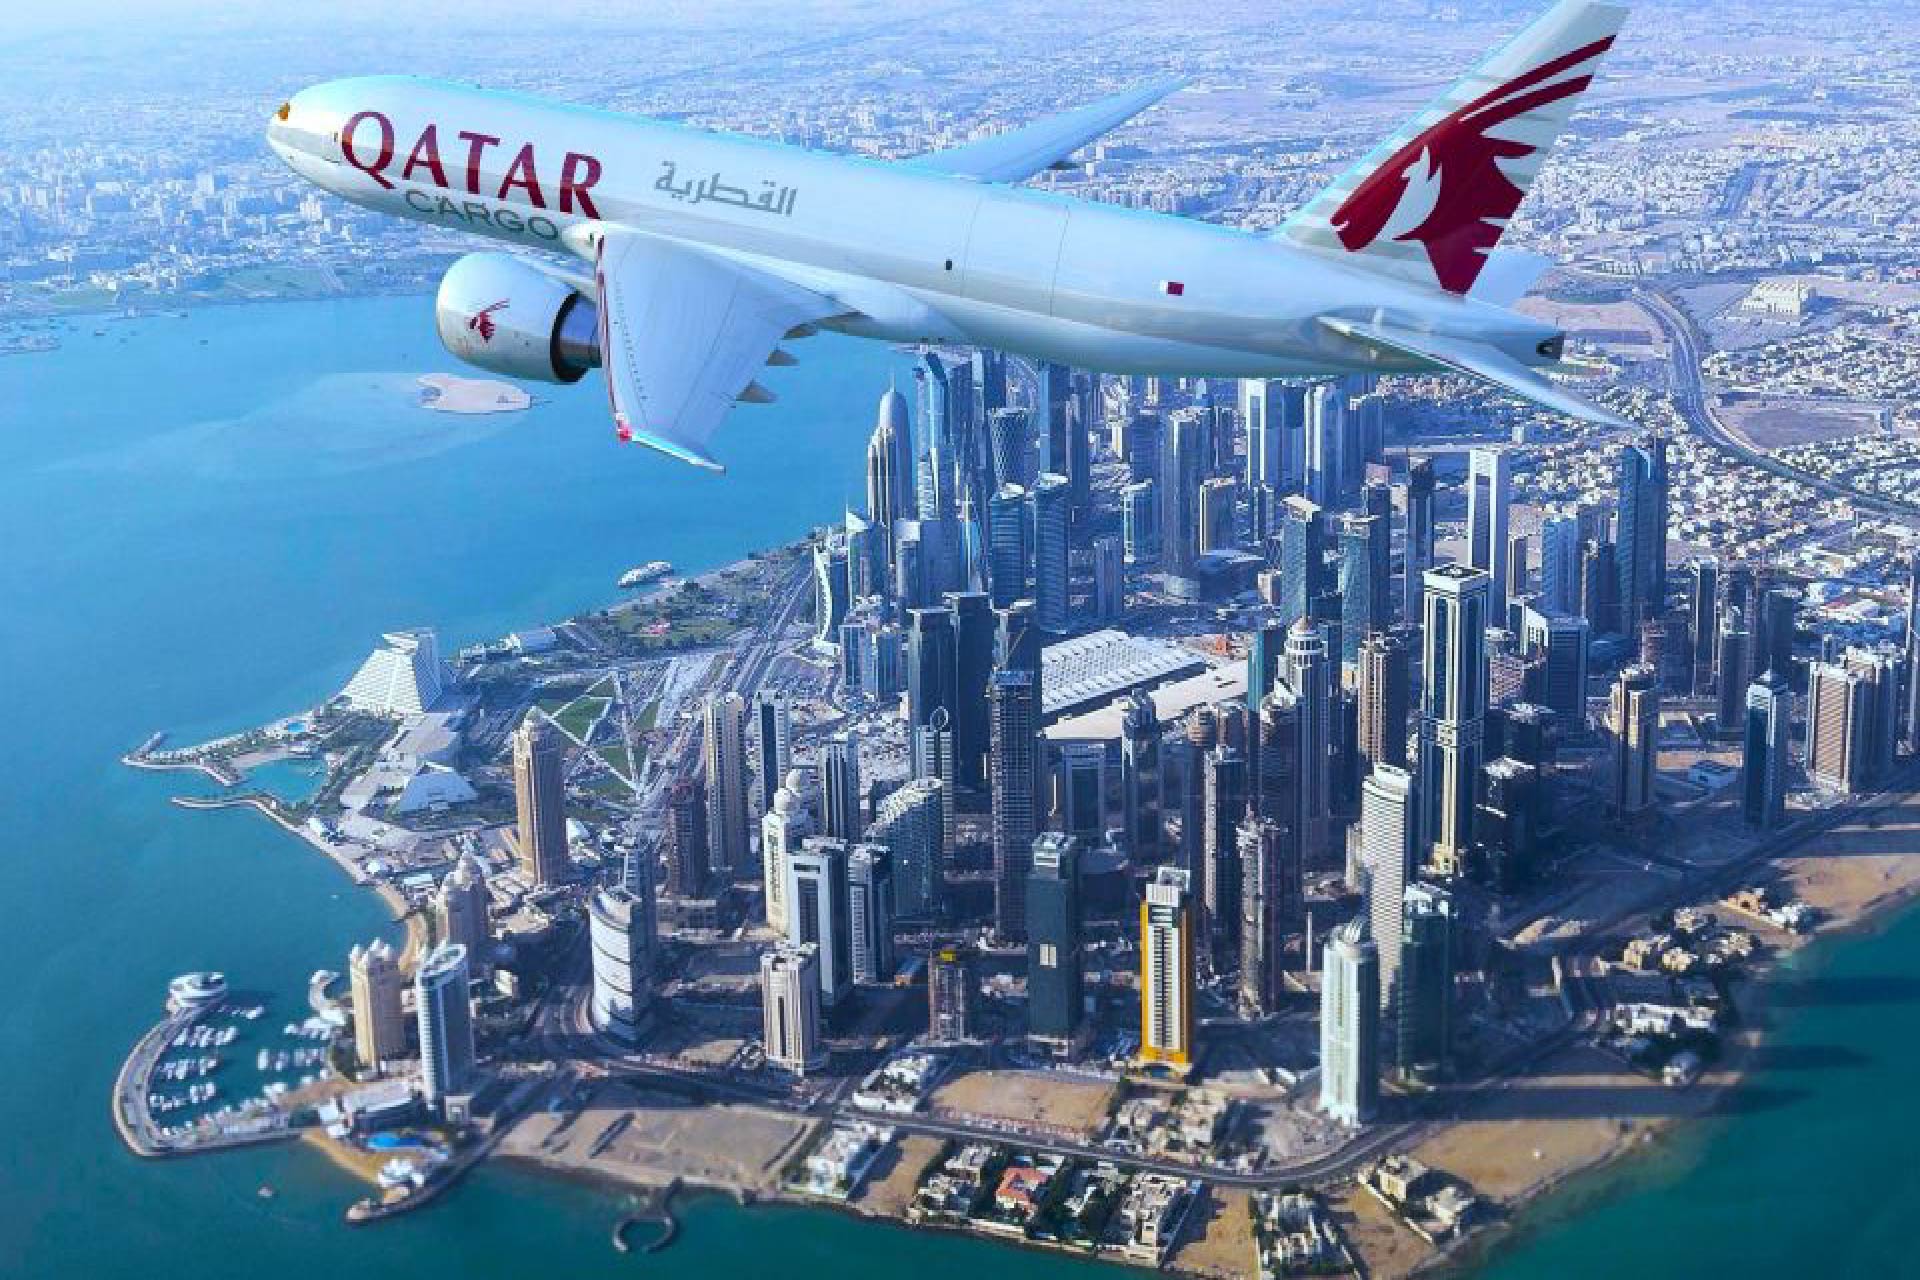 qatar airways transit city tour